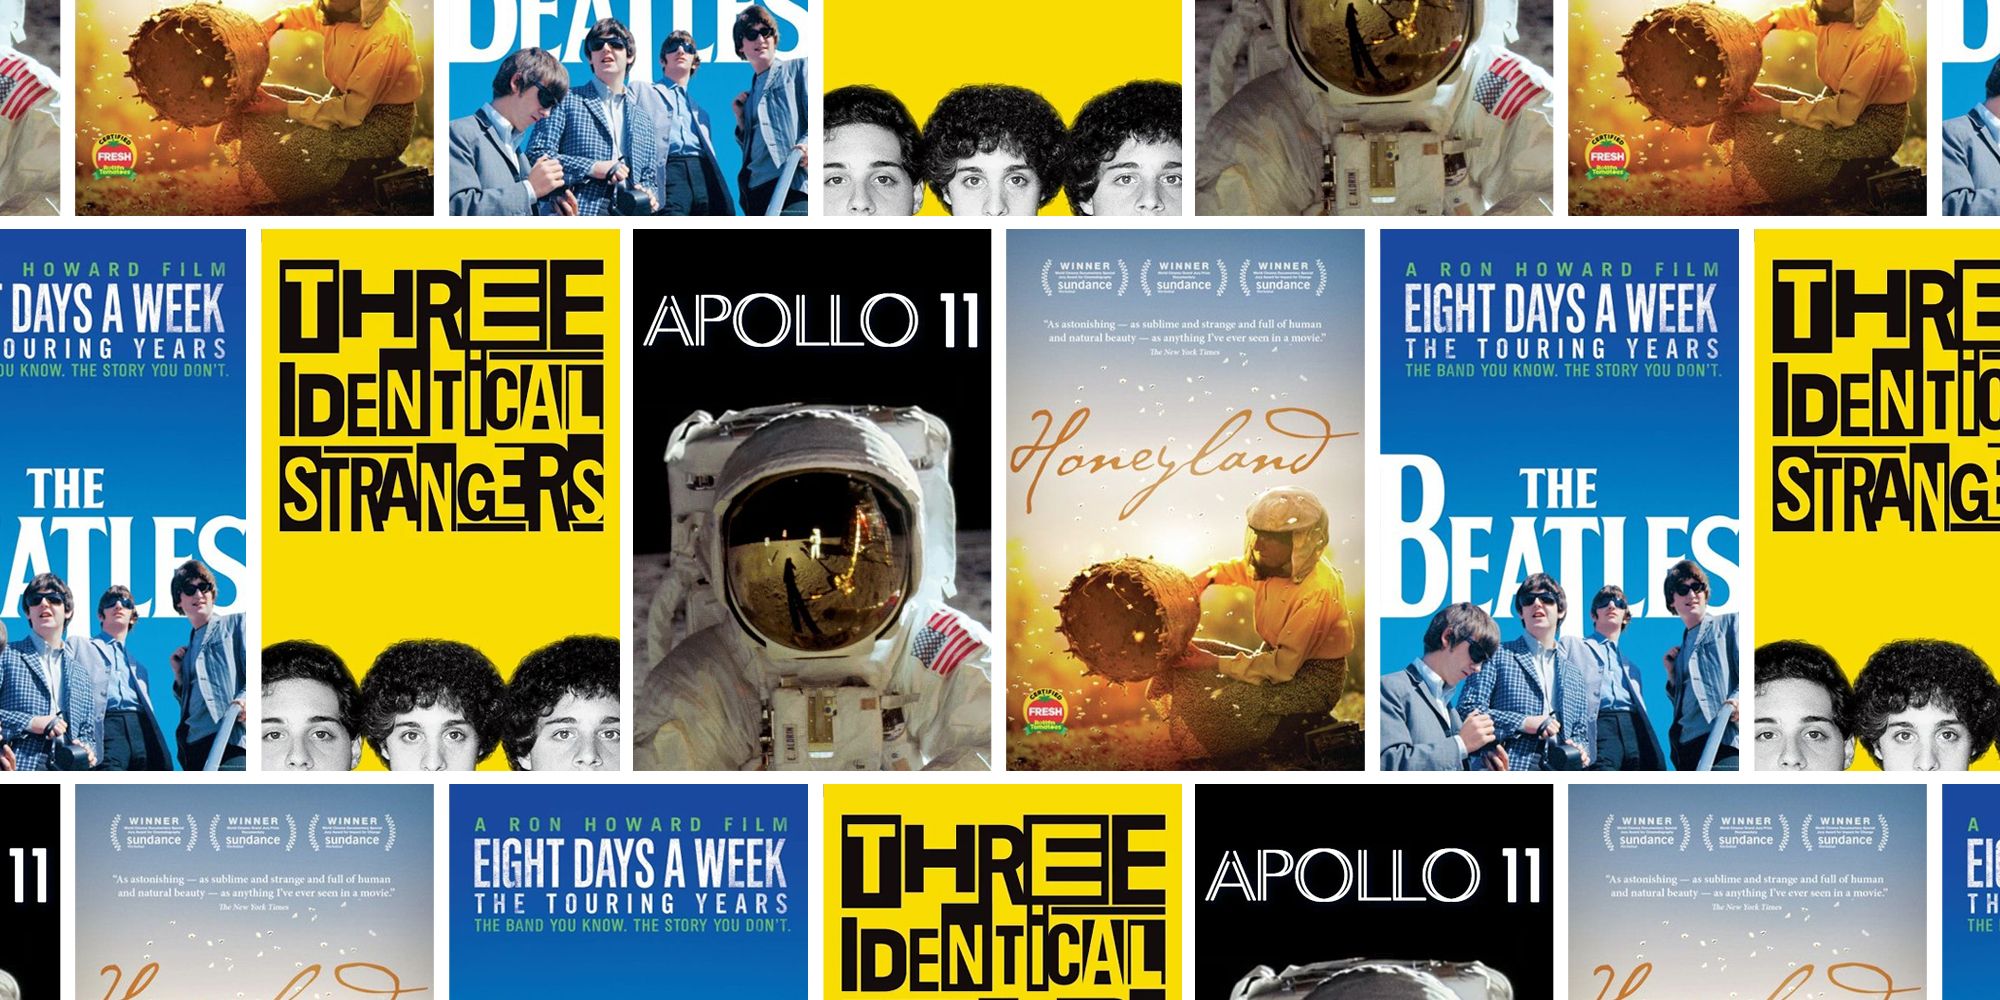 12 Best Documentaries To Watch On Hulu - Top Hulu Documentaries To Stream